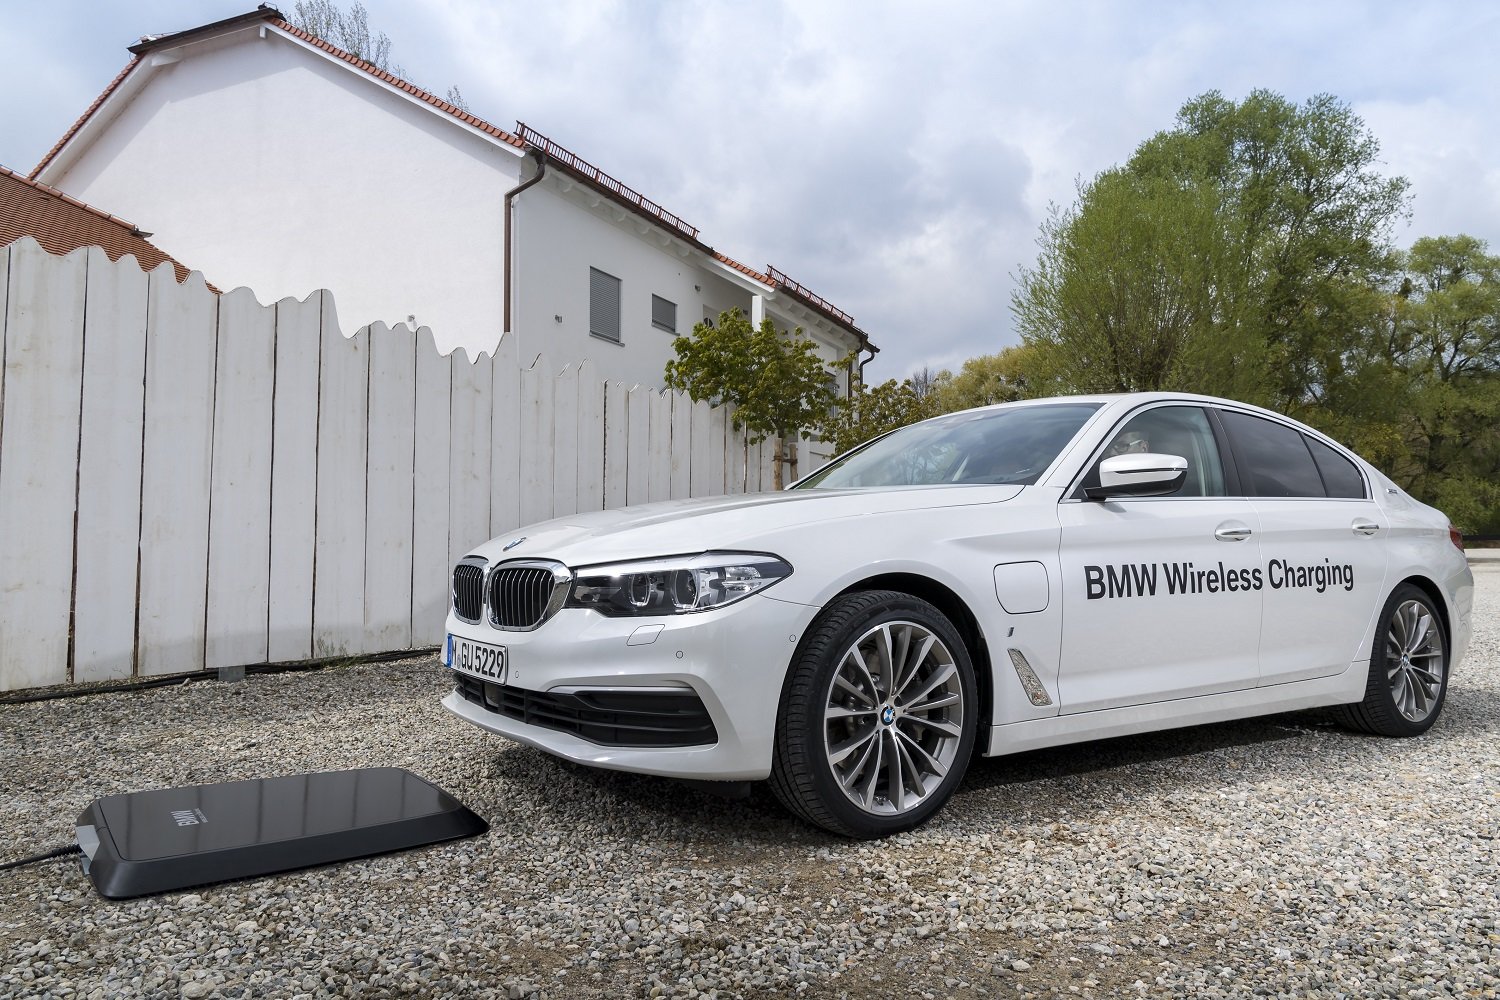 BMW se pochlubilo novým příslušenstvím, díky kterému bude nabíjení podstatně snazší